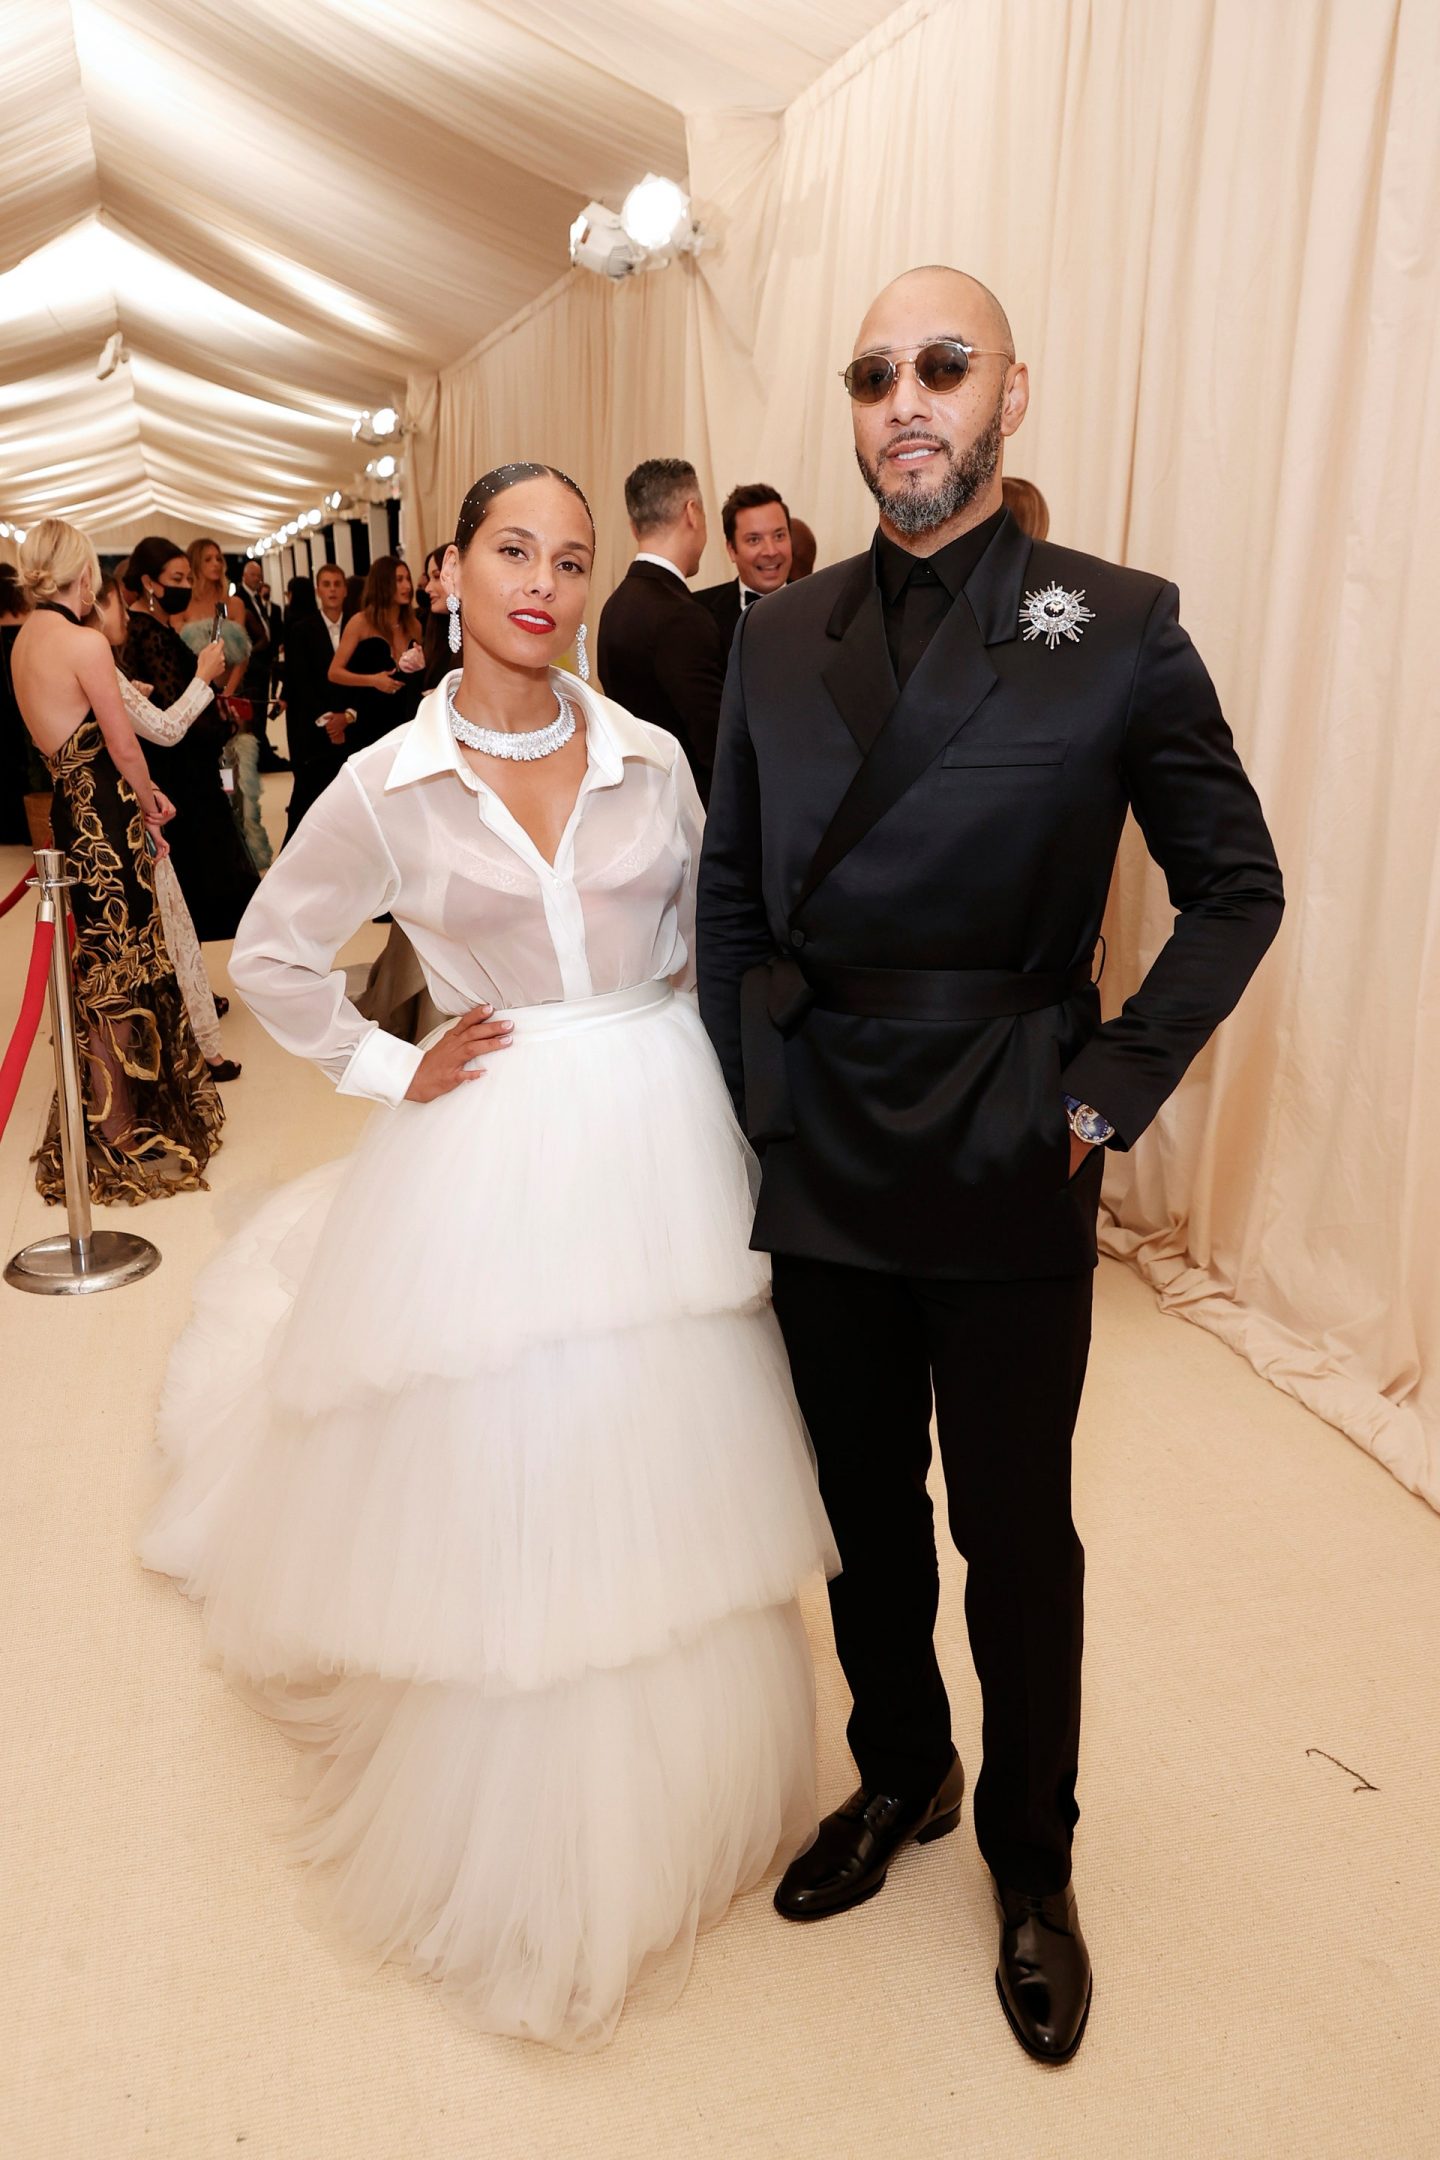 Alicia Keys and Swizz Beatz Met gala 2021 outfits